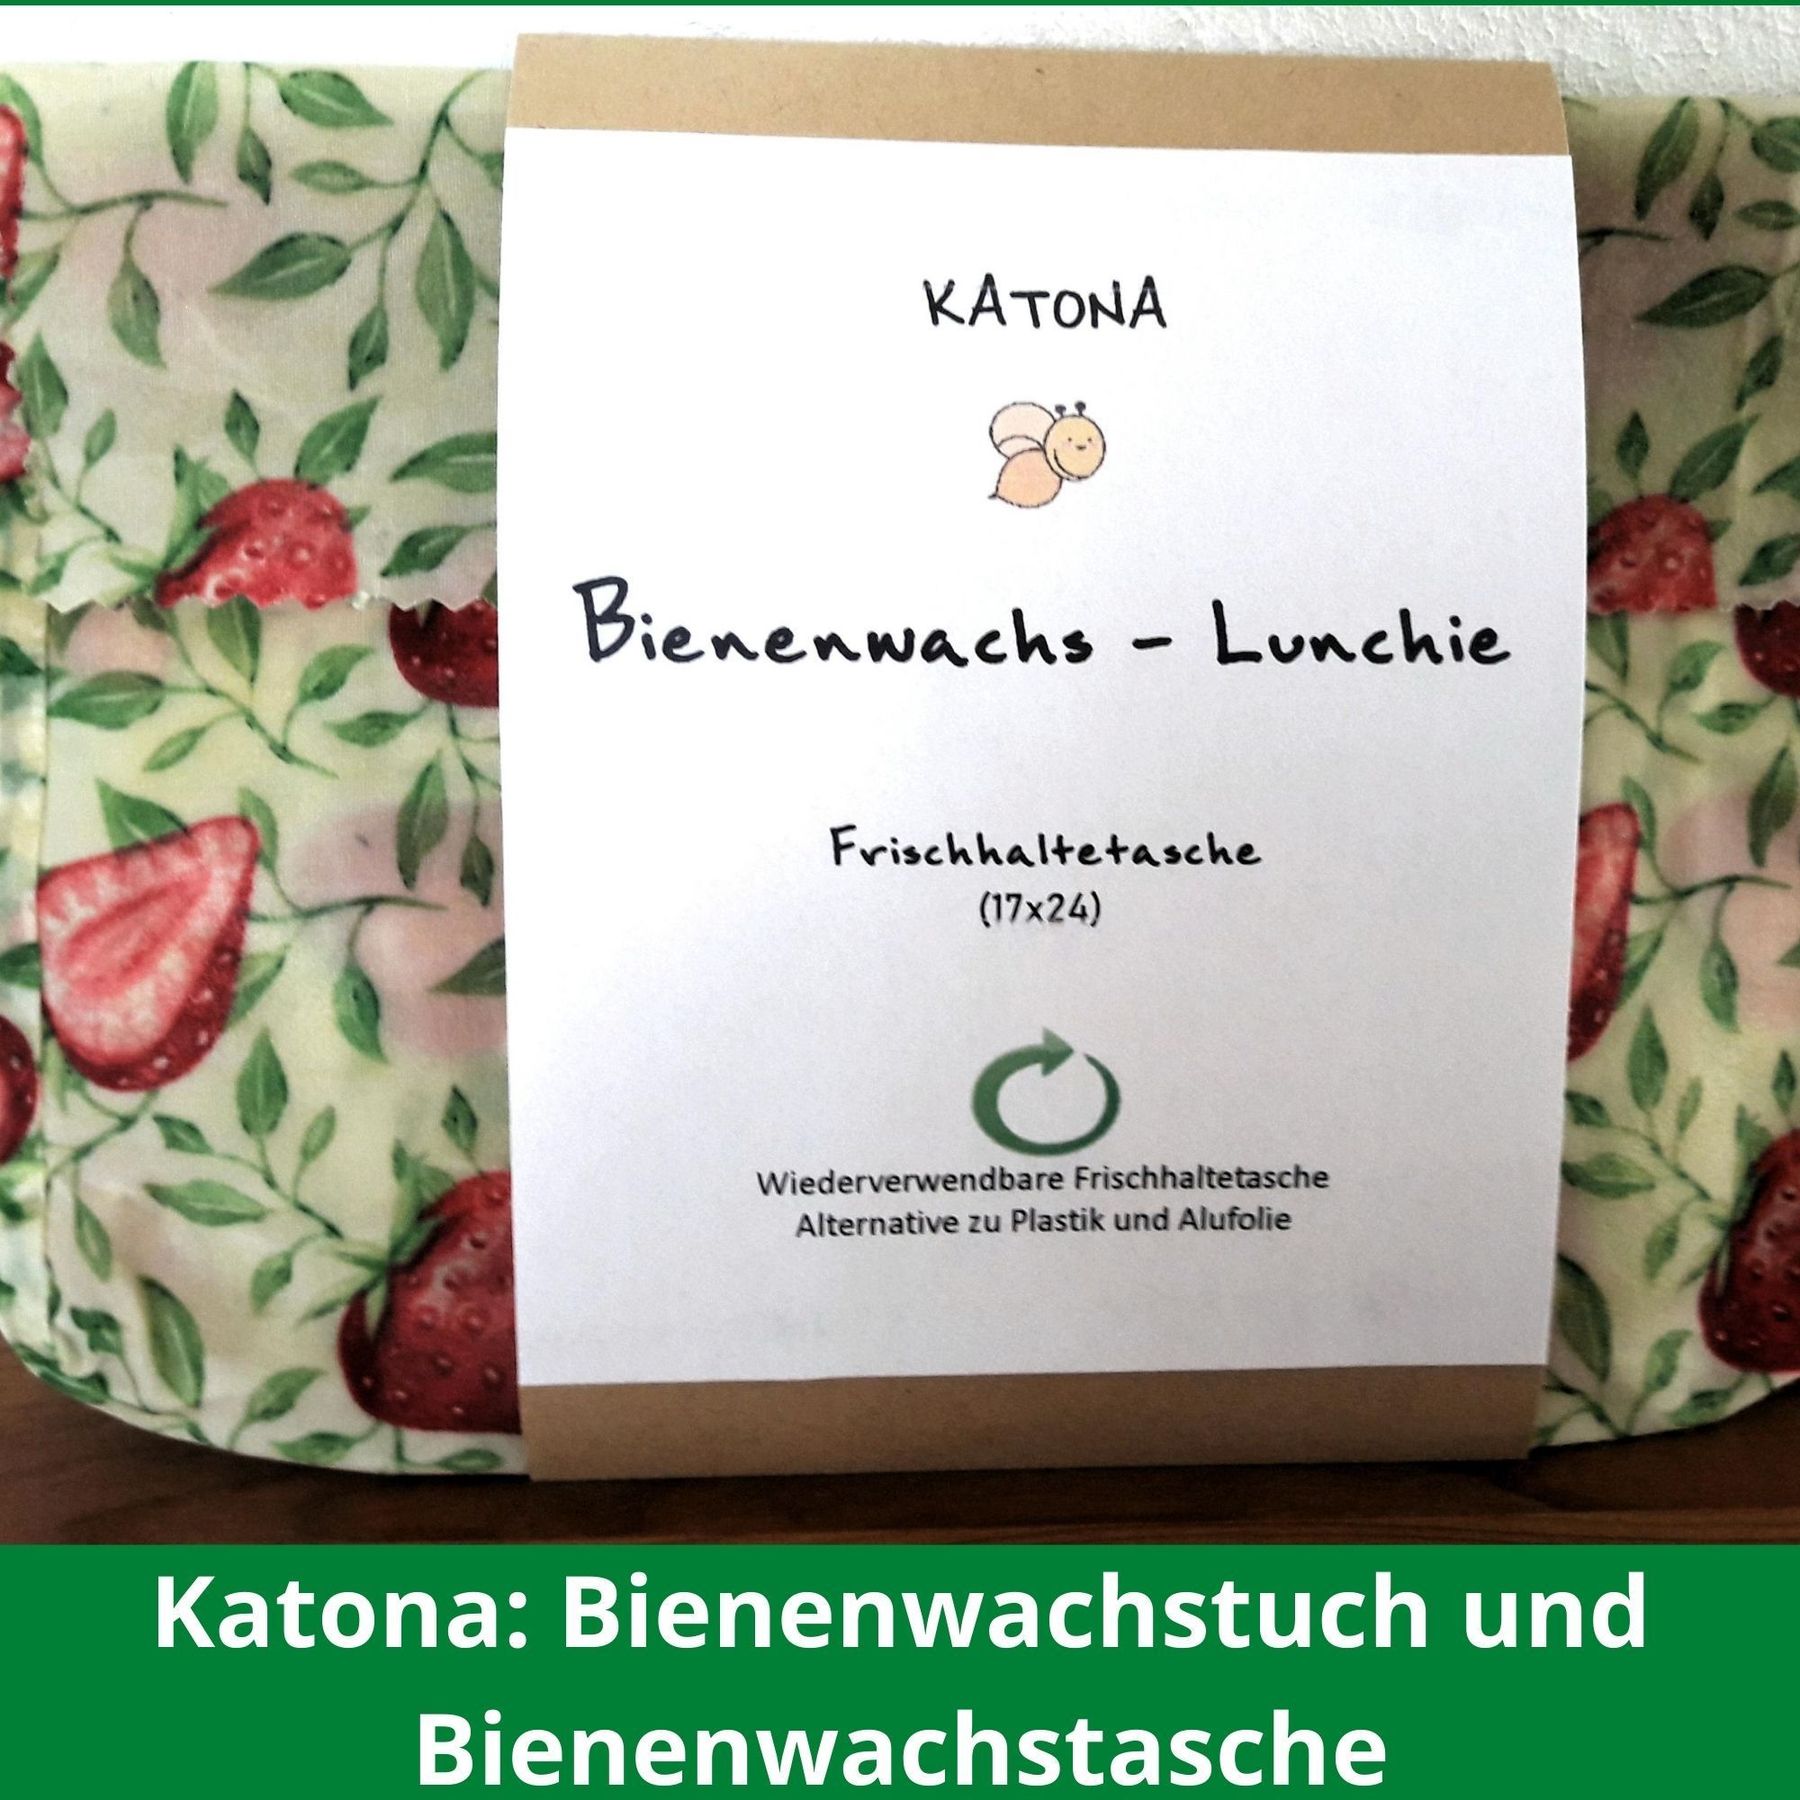 katona-bienenwachstuch und bienenwachstasche-lk burgenland-innovationspreis burgenland isst innovativ.jpg